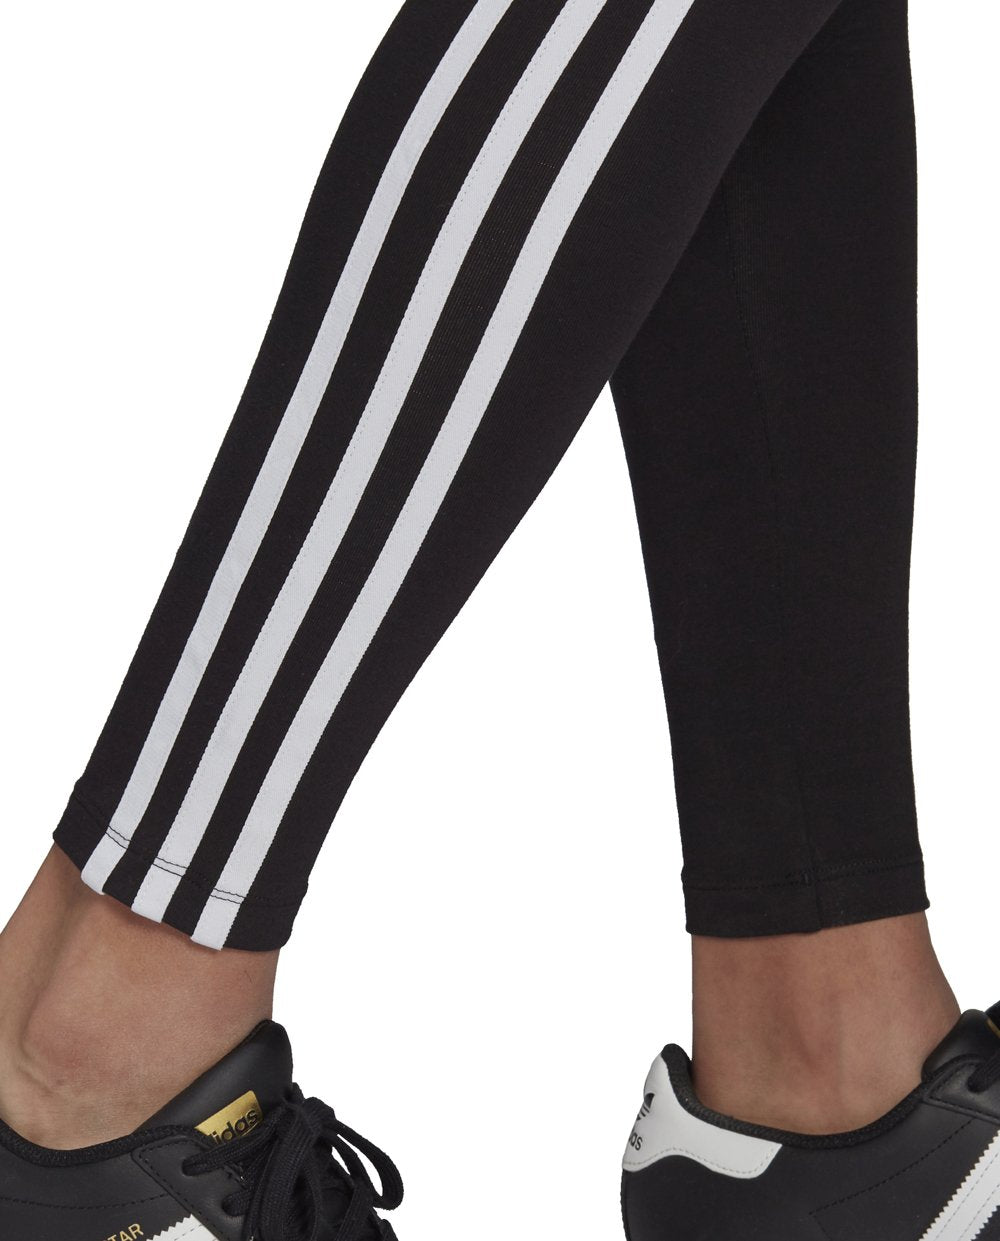 Adidas Leggings Pretas com Riscas Brancas